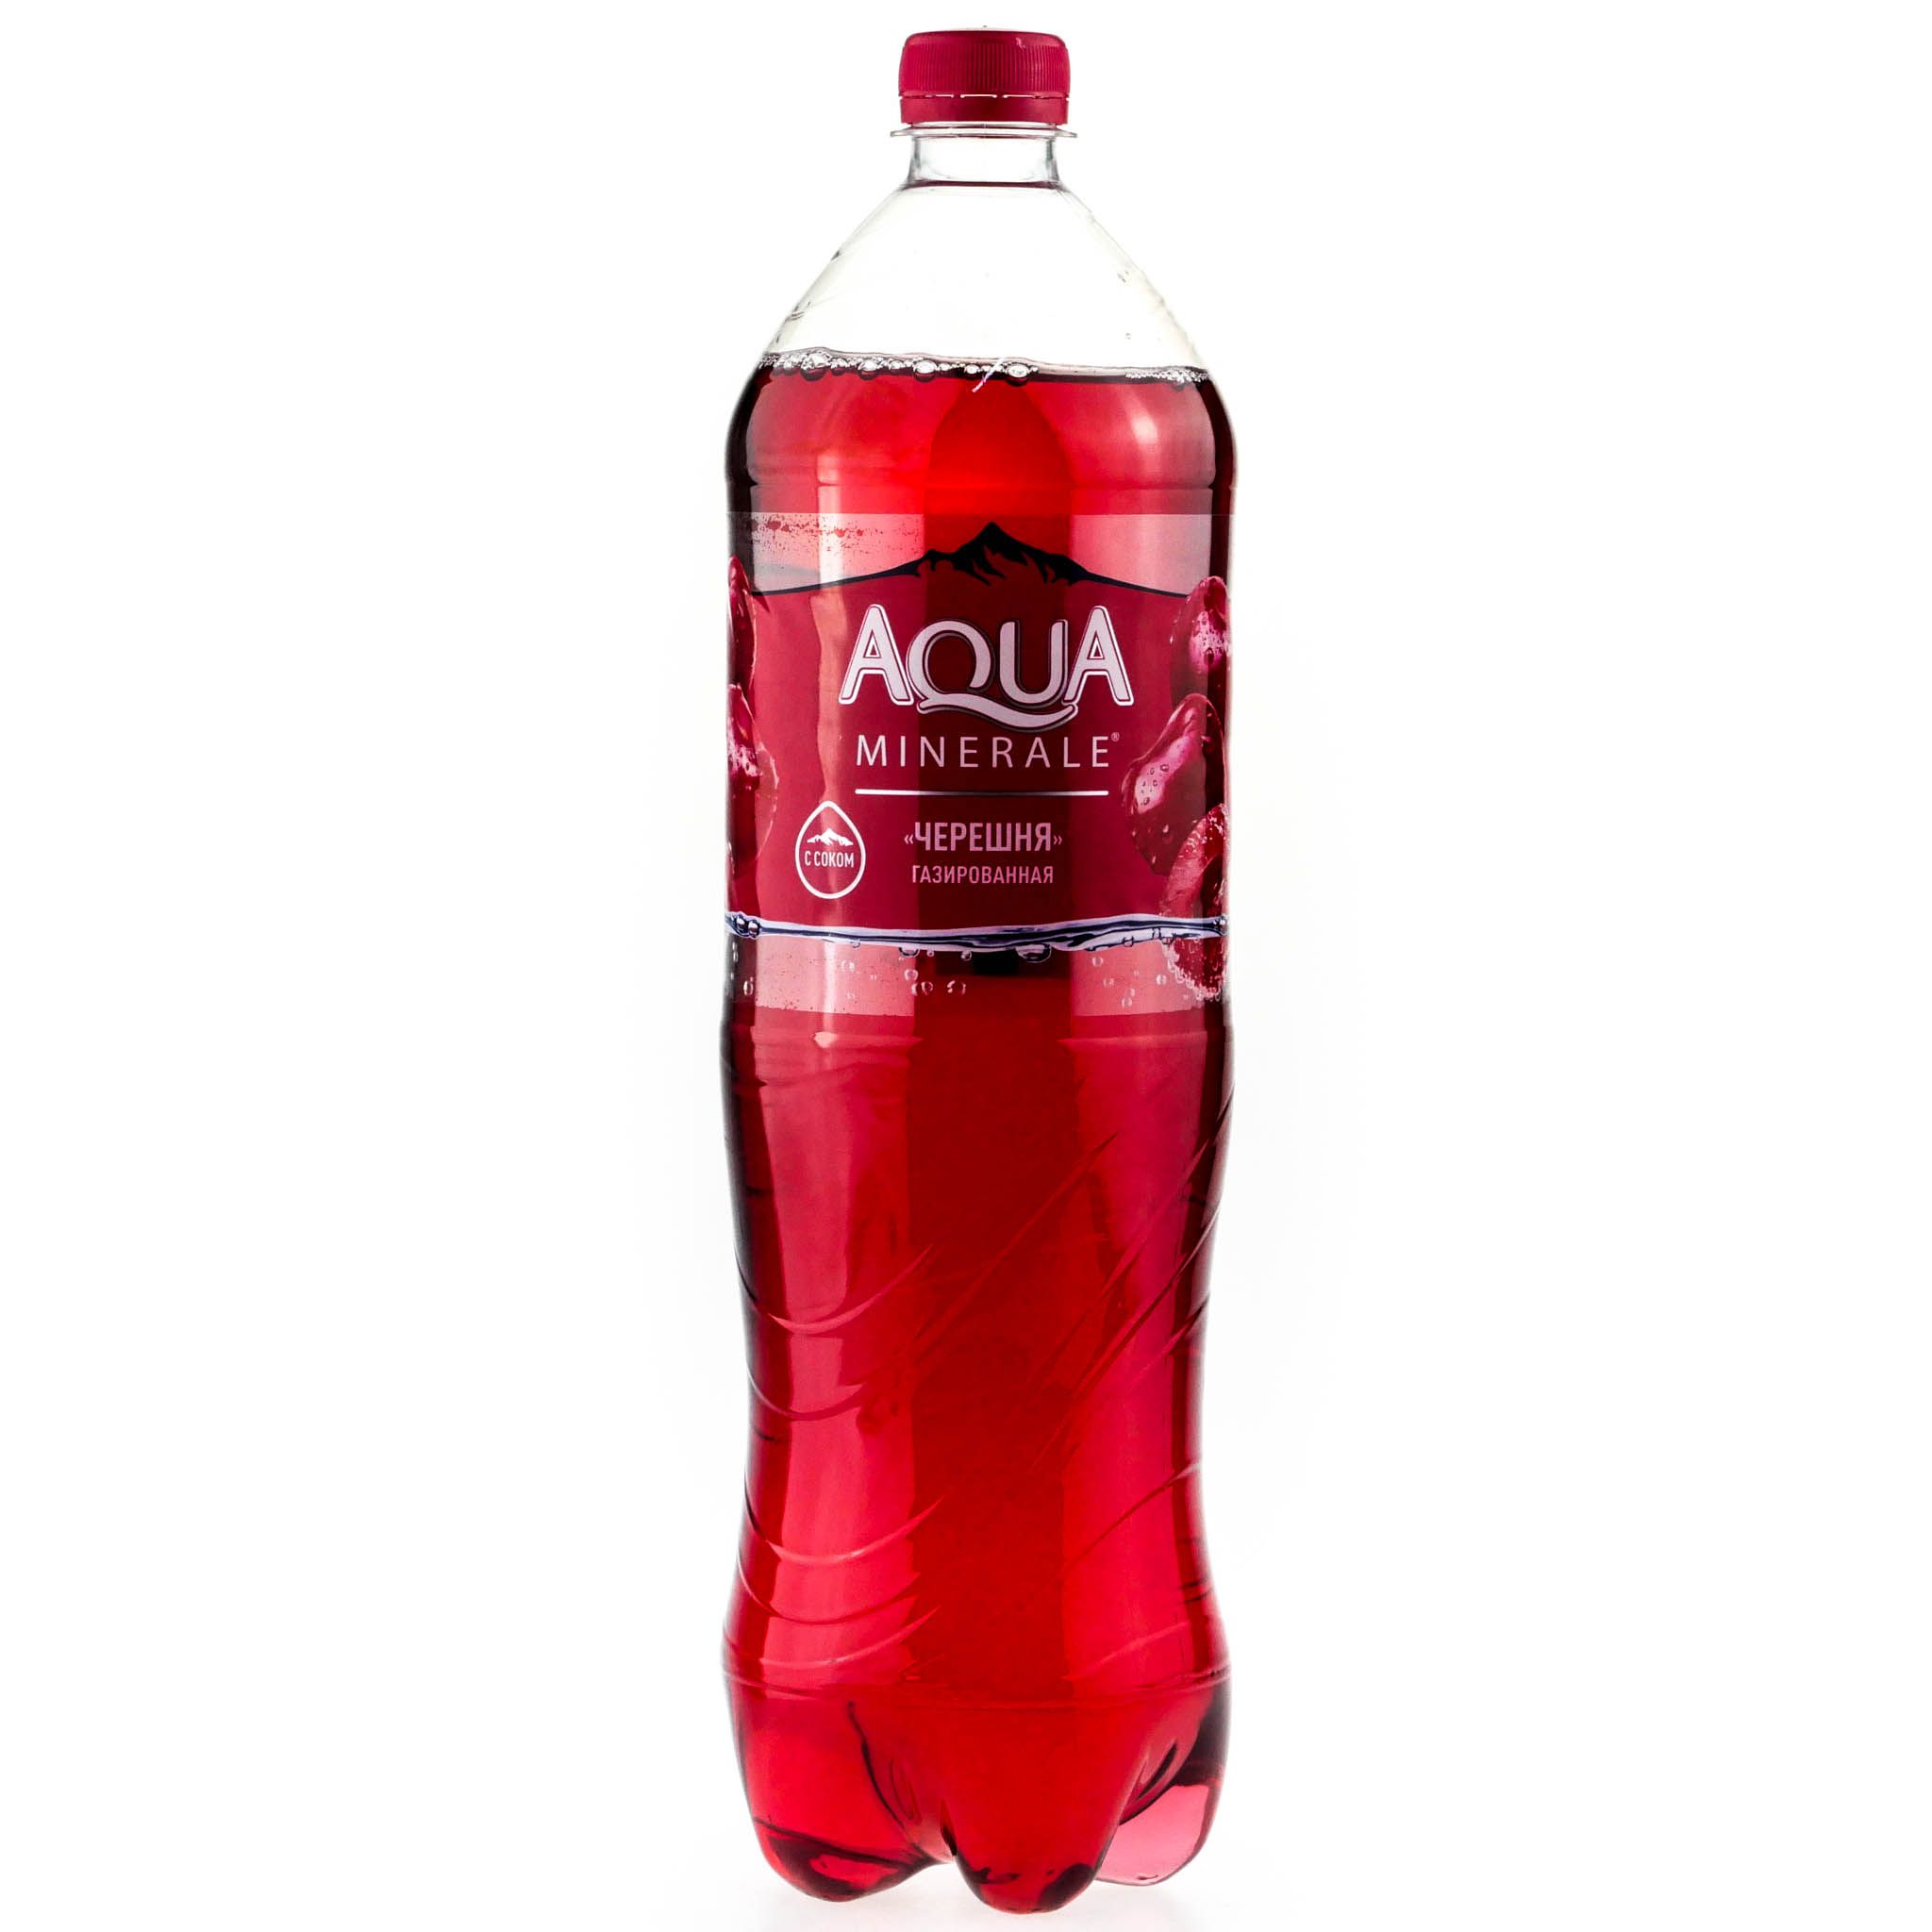 Газированная вода 1.5 литра. Аква Минерале черешня 1.5. Aqua minerale вишня газированная. Аква Минерале с соком черешни. Аква Минерале черешня 0.5.